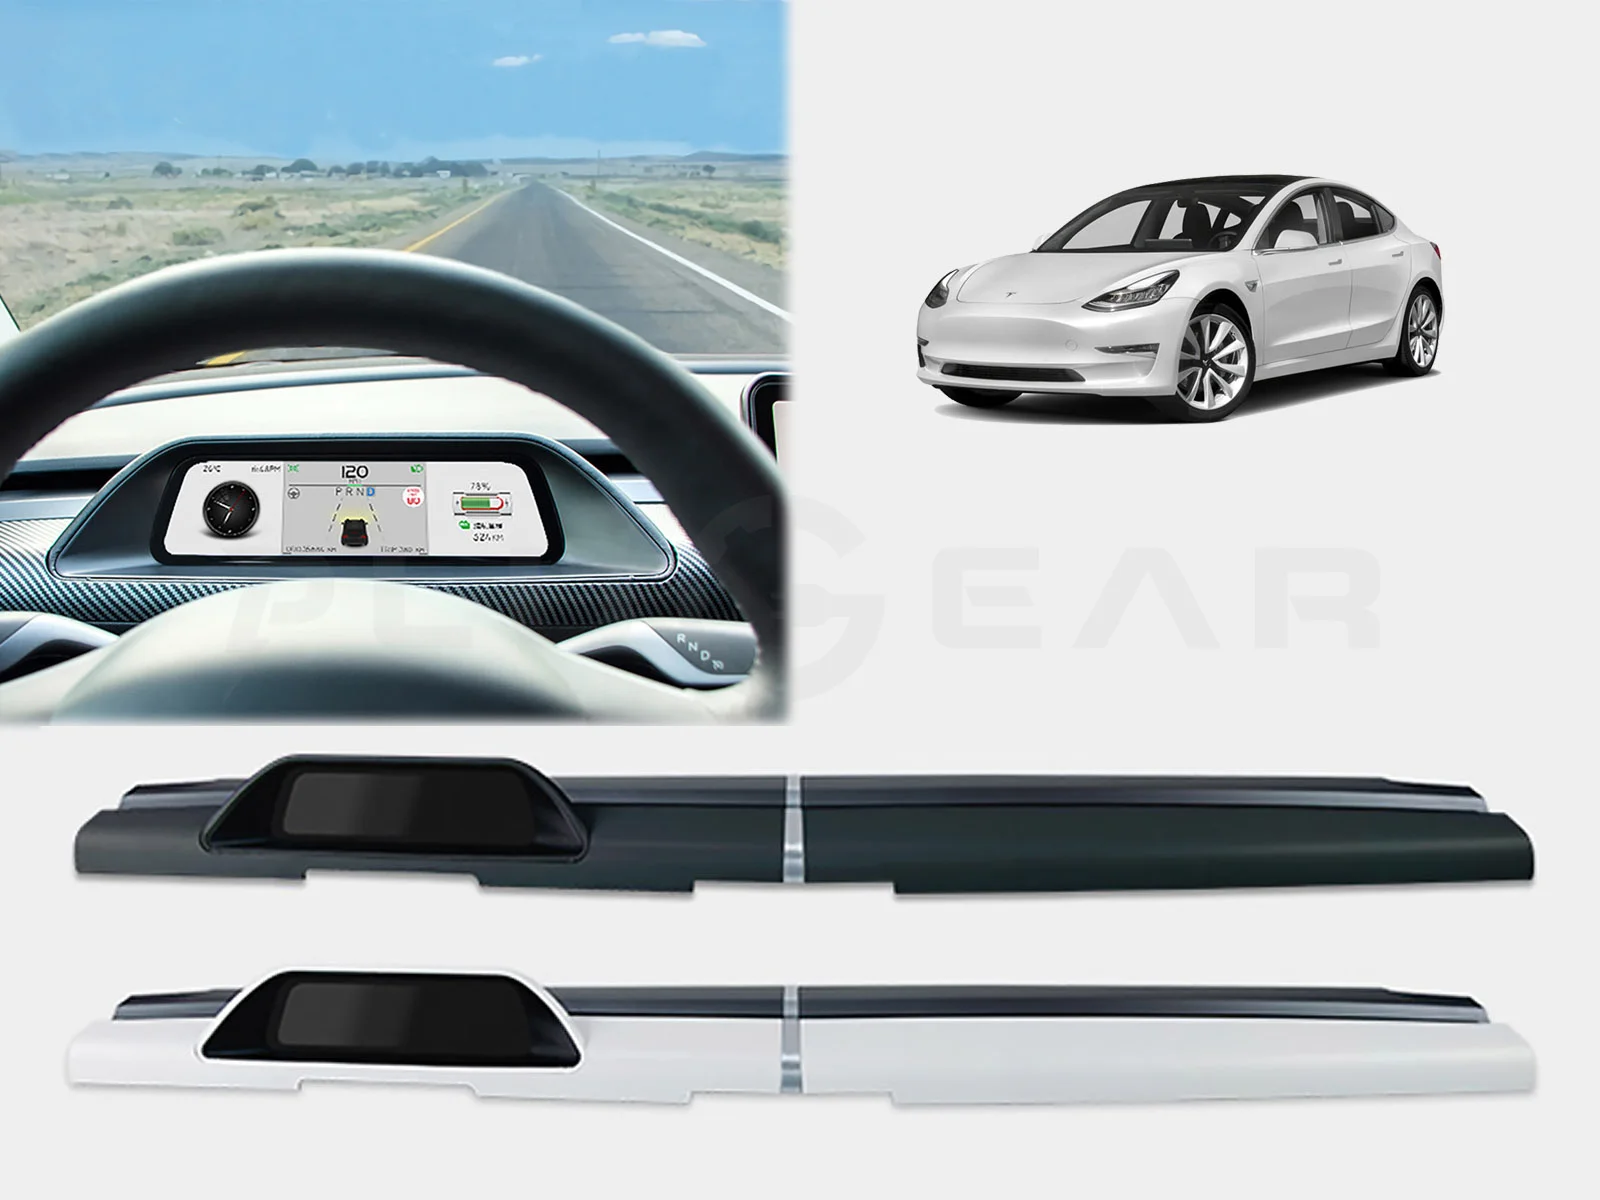 Plateau de tableau de bord amovible pour Tesla Model 3/Y